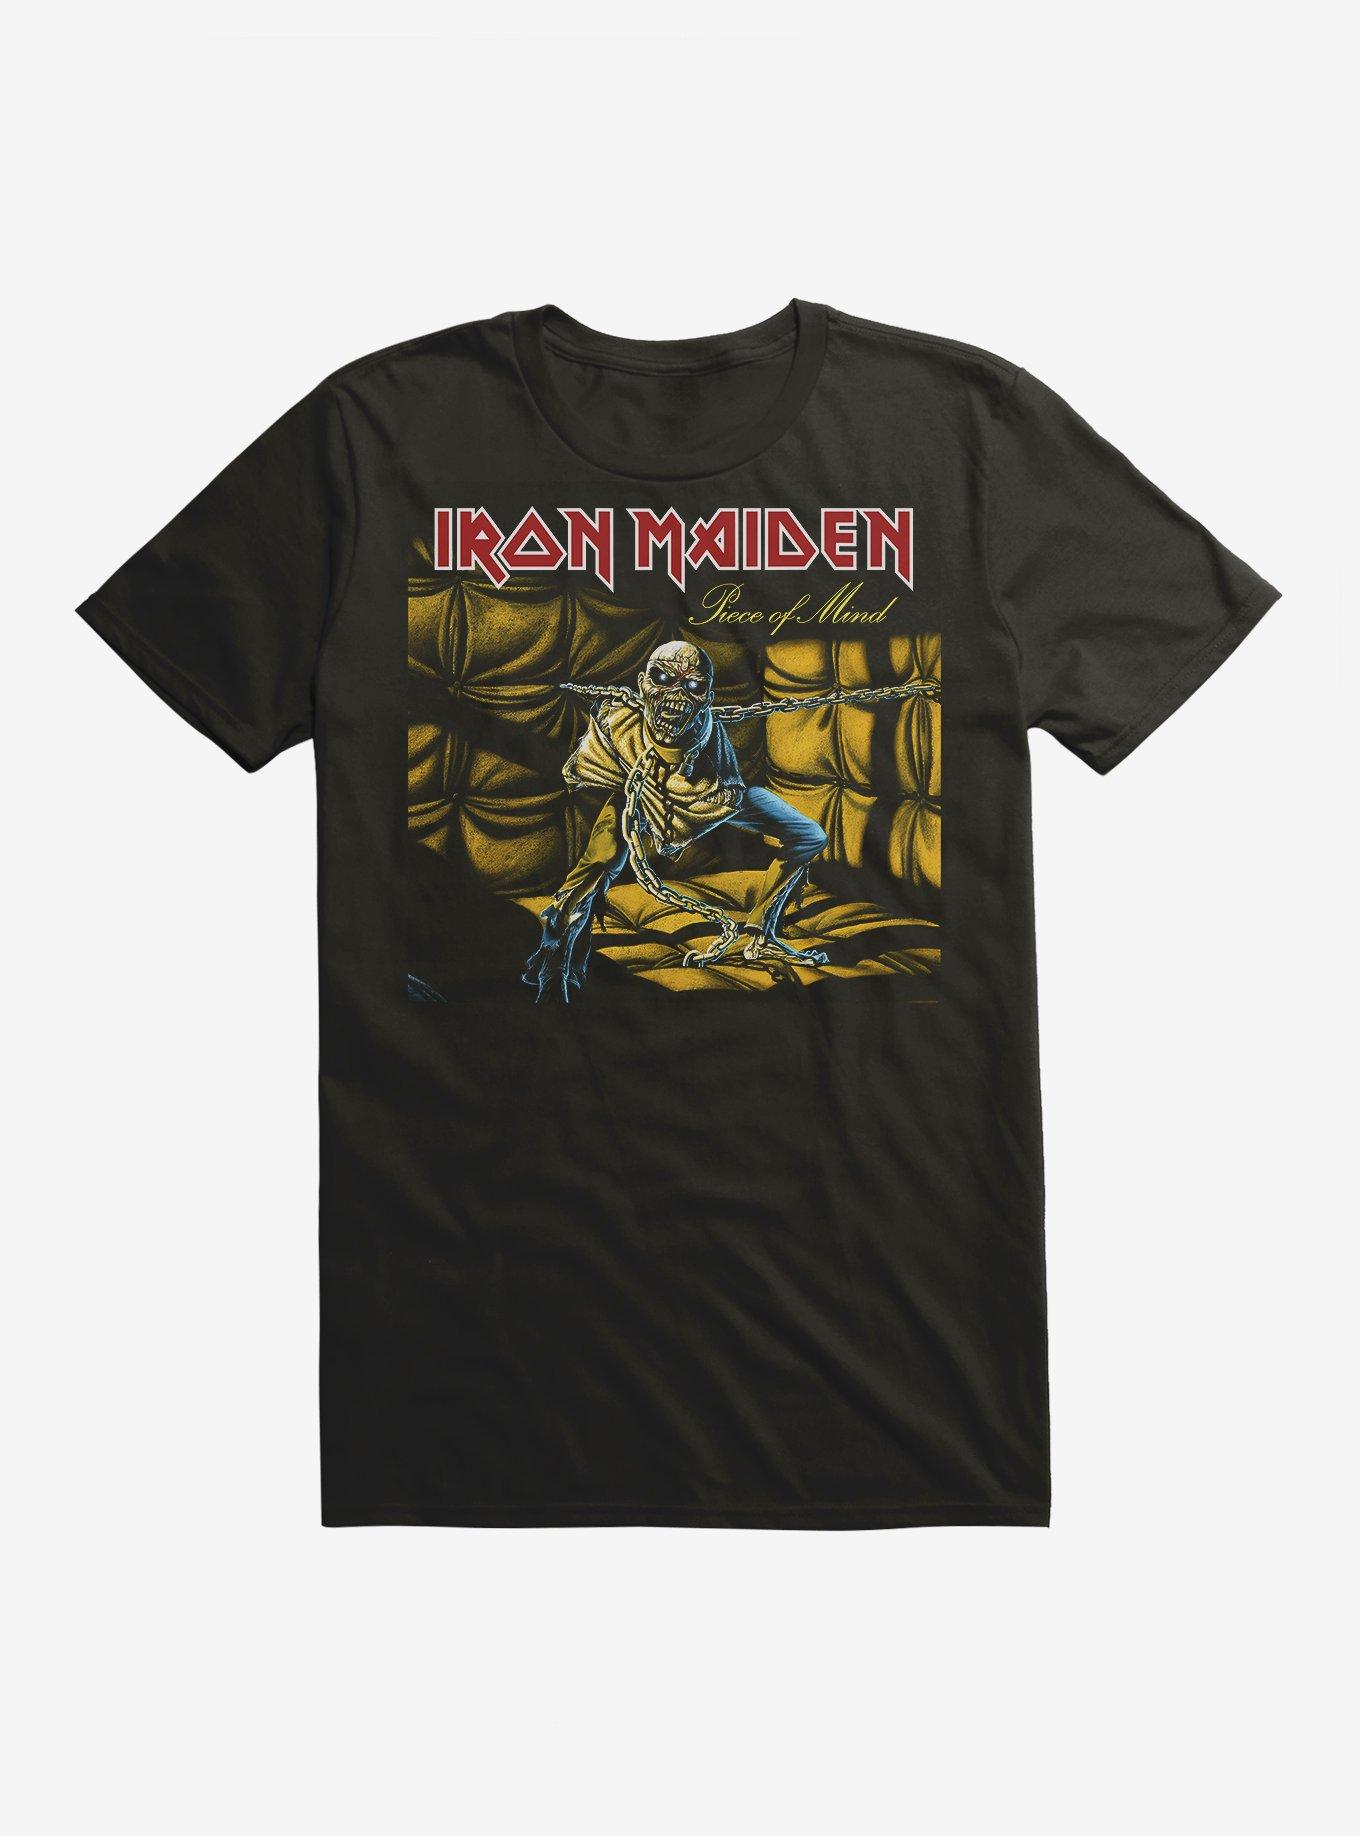 Official Iron Maiden Merch & T-shirts